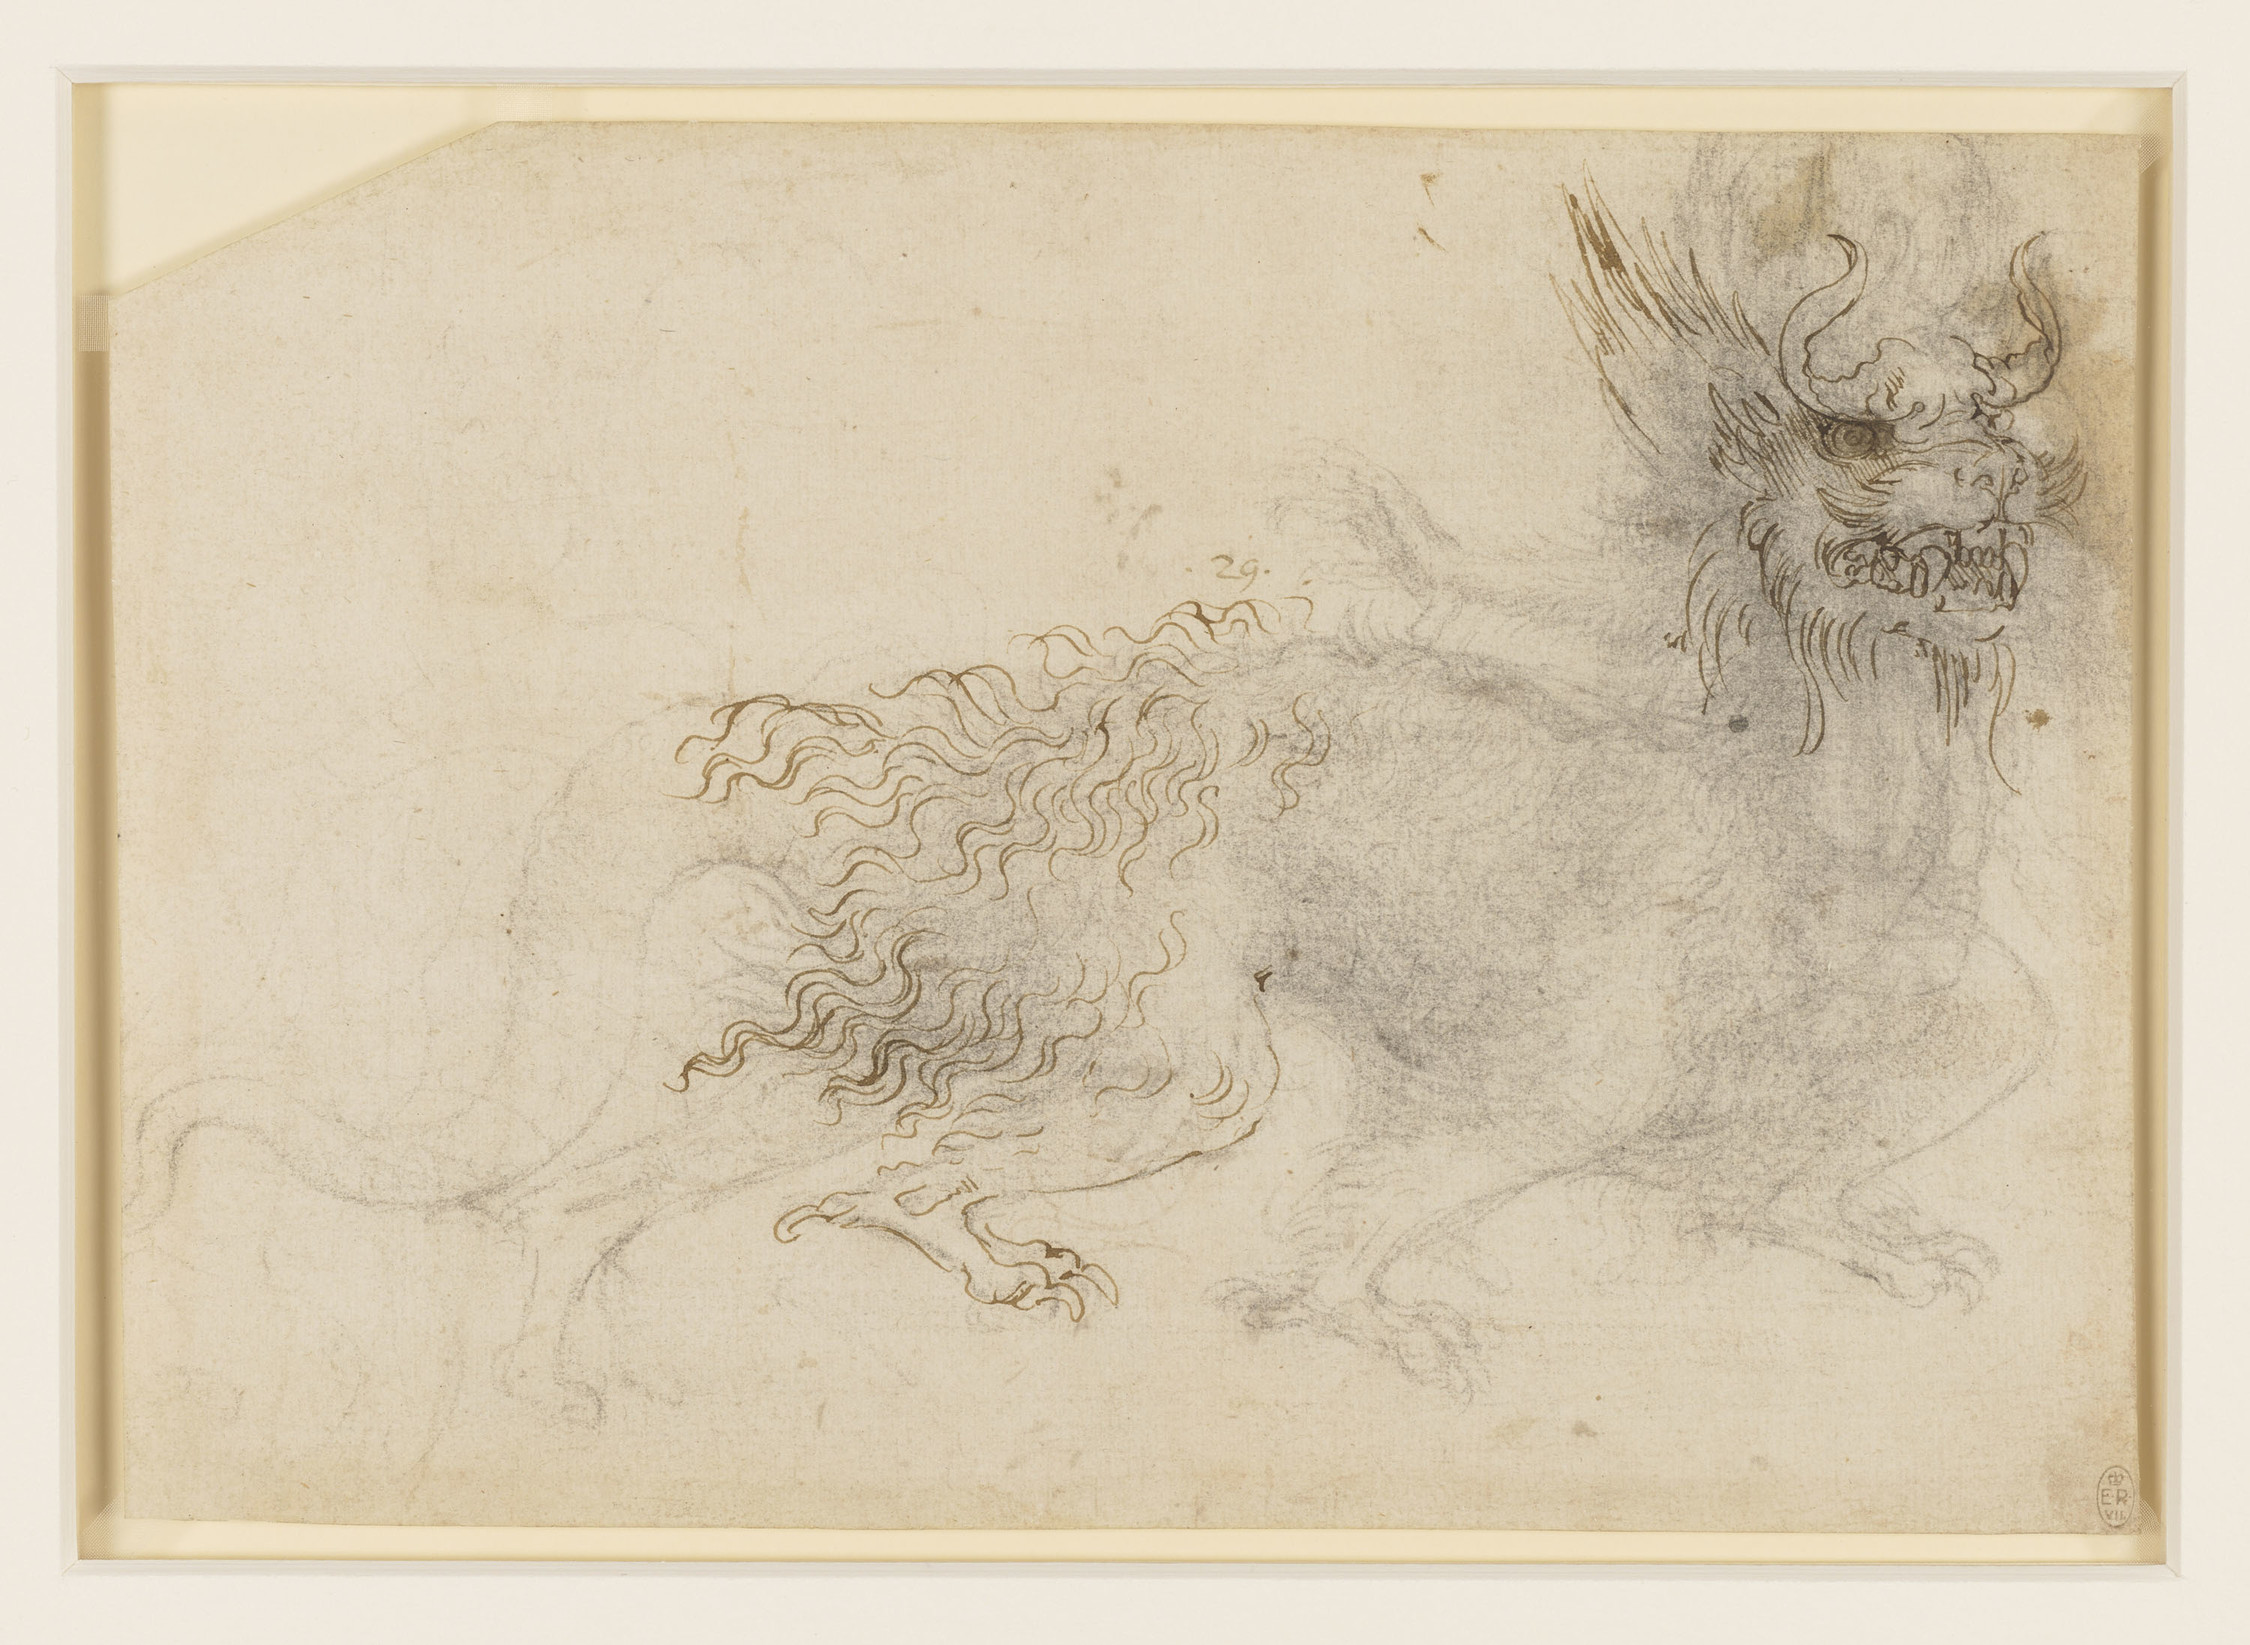 Een ontwerp voor een drakenkostuum by Leonardo da Vinci - c.1517-18 - 18.8 x 27.0 cm 